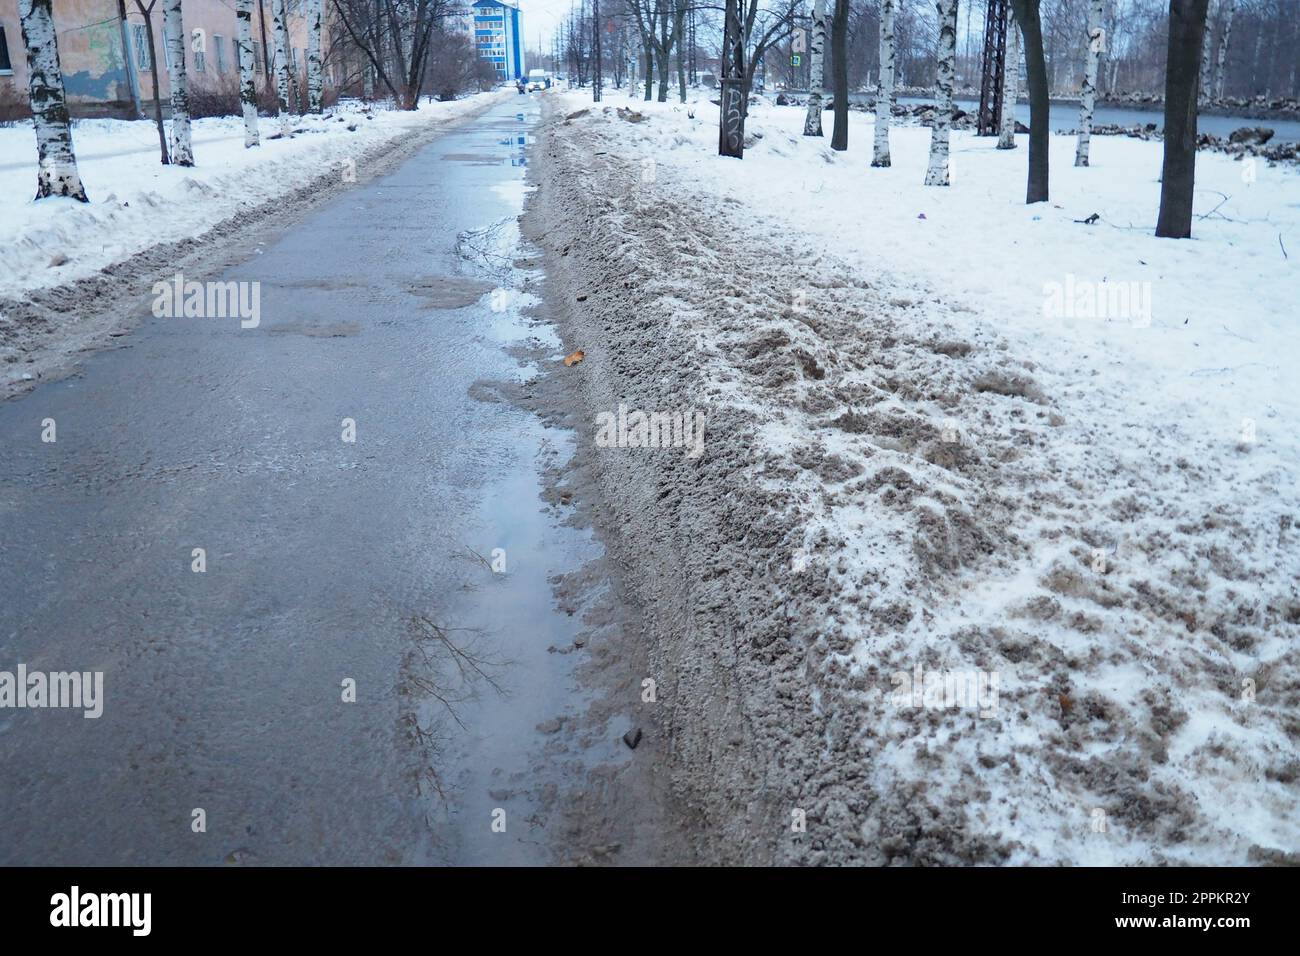 Petrozavodsk, Russland, 01,15. 2023 Schnee, Eis, Matsch und Winterschlamm auf dem Bürgersteig. Die Lufttemperatur beträgt etwa 0 °C. Schwierige Fahrbedingungen. Infrastruktur, Straßendienste. Straßenbelag mit nassem Schnee Stockfoto